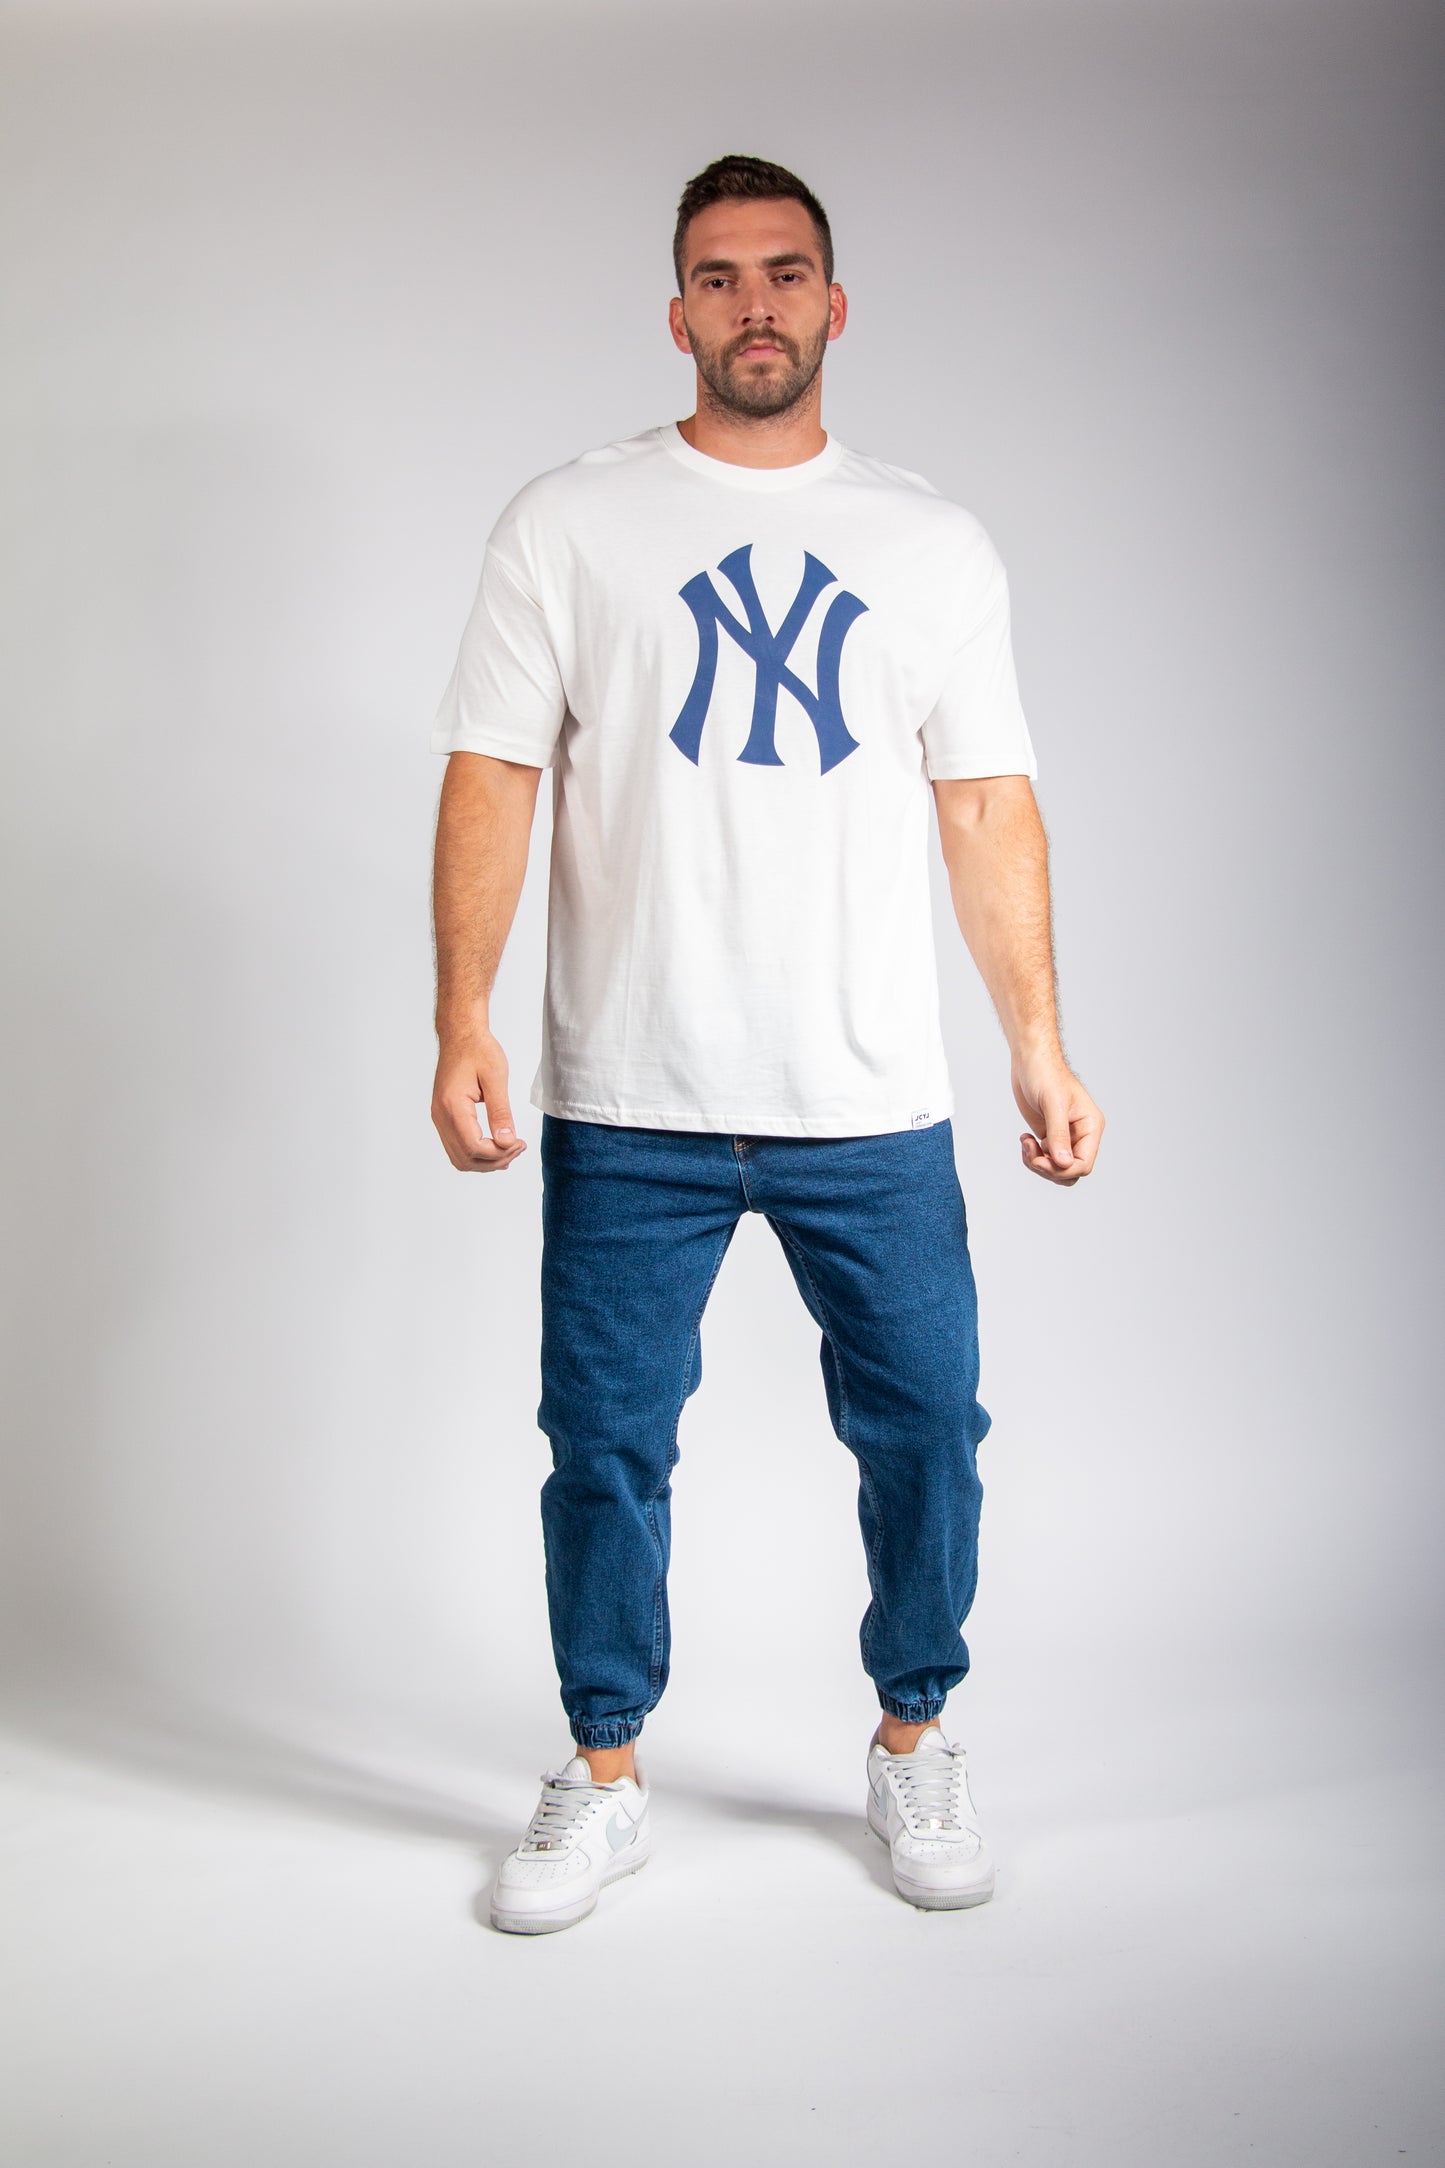 NY T-Shirt for men